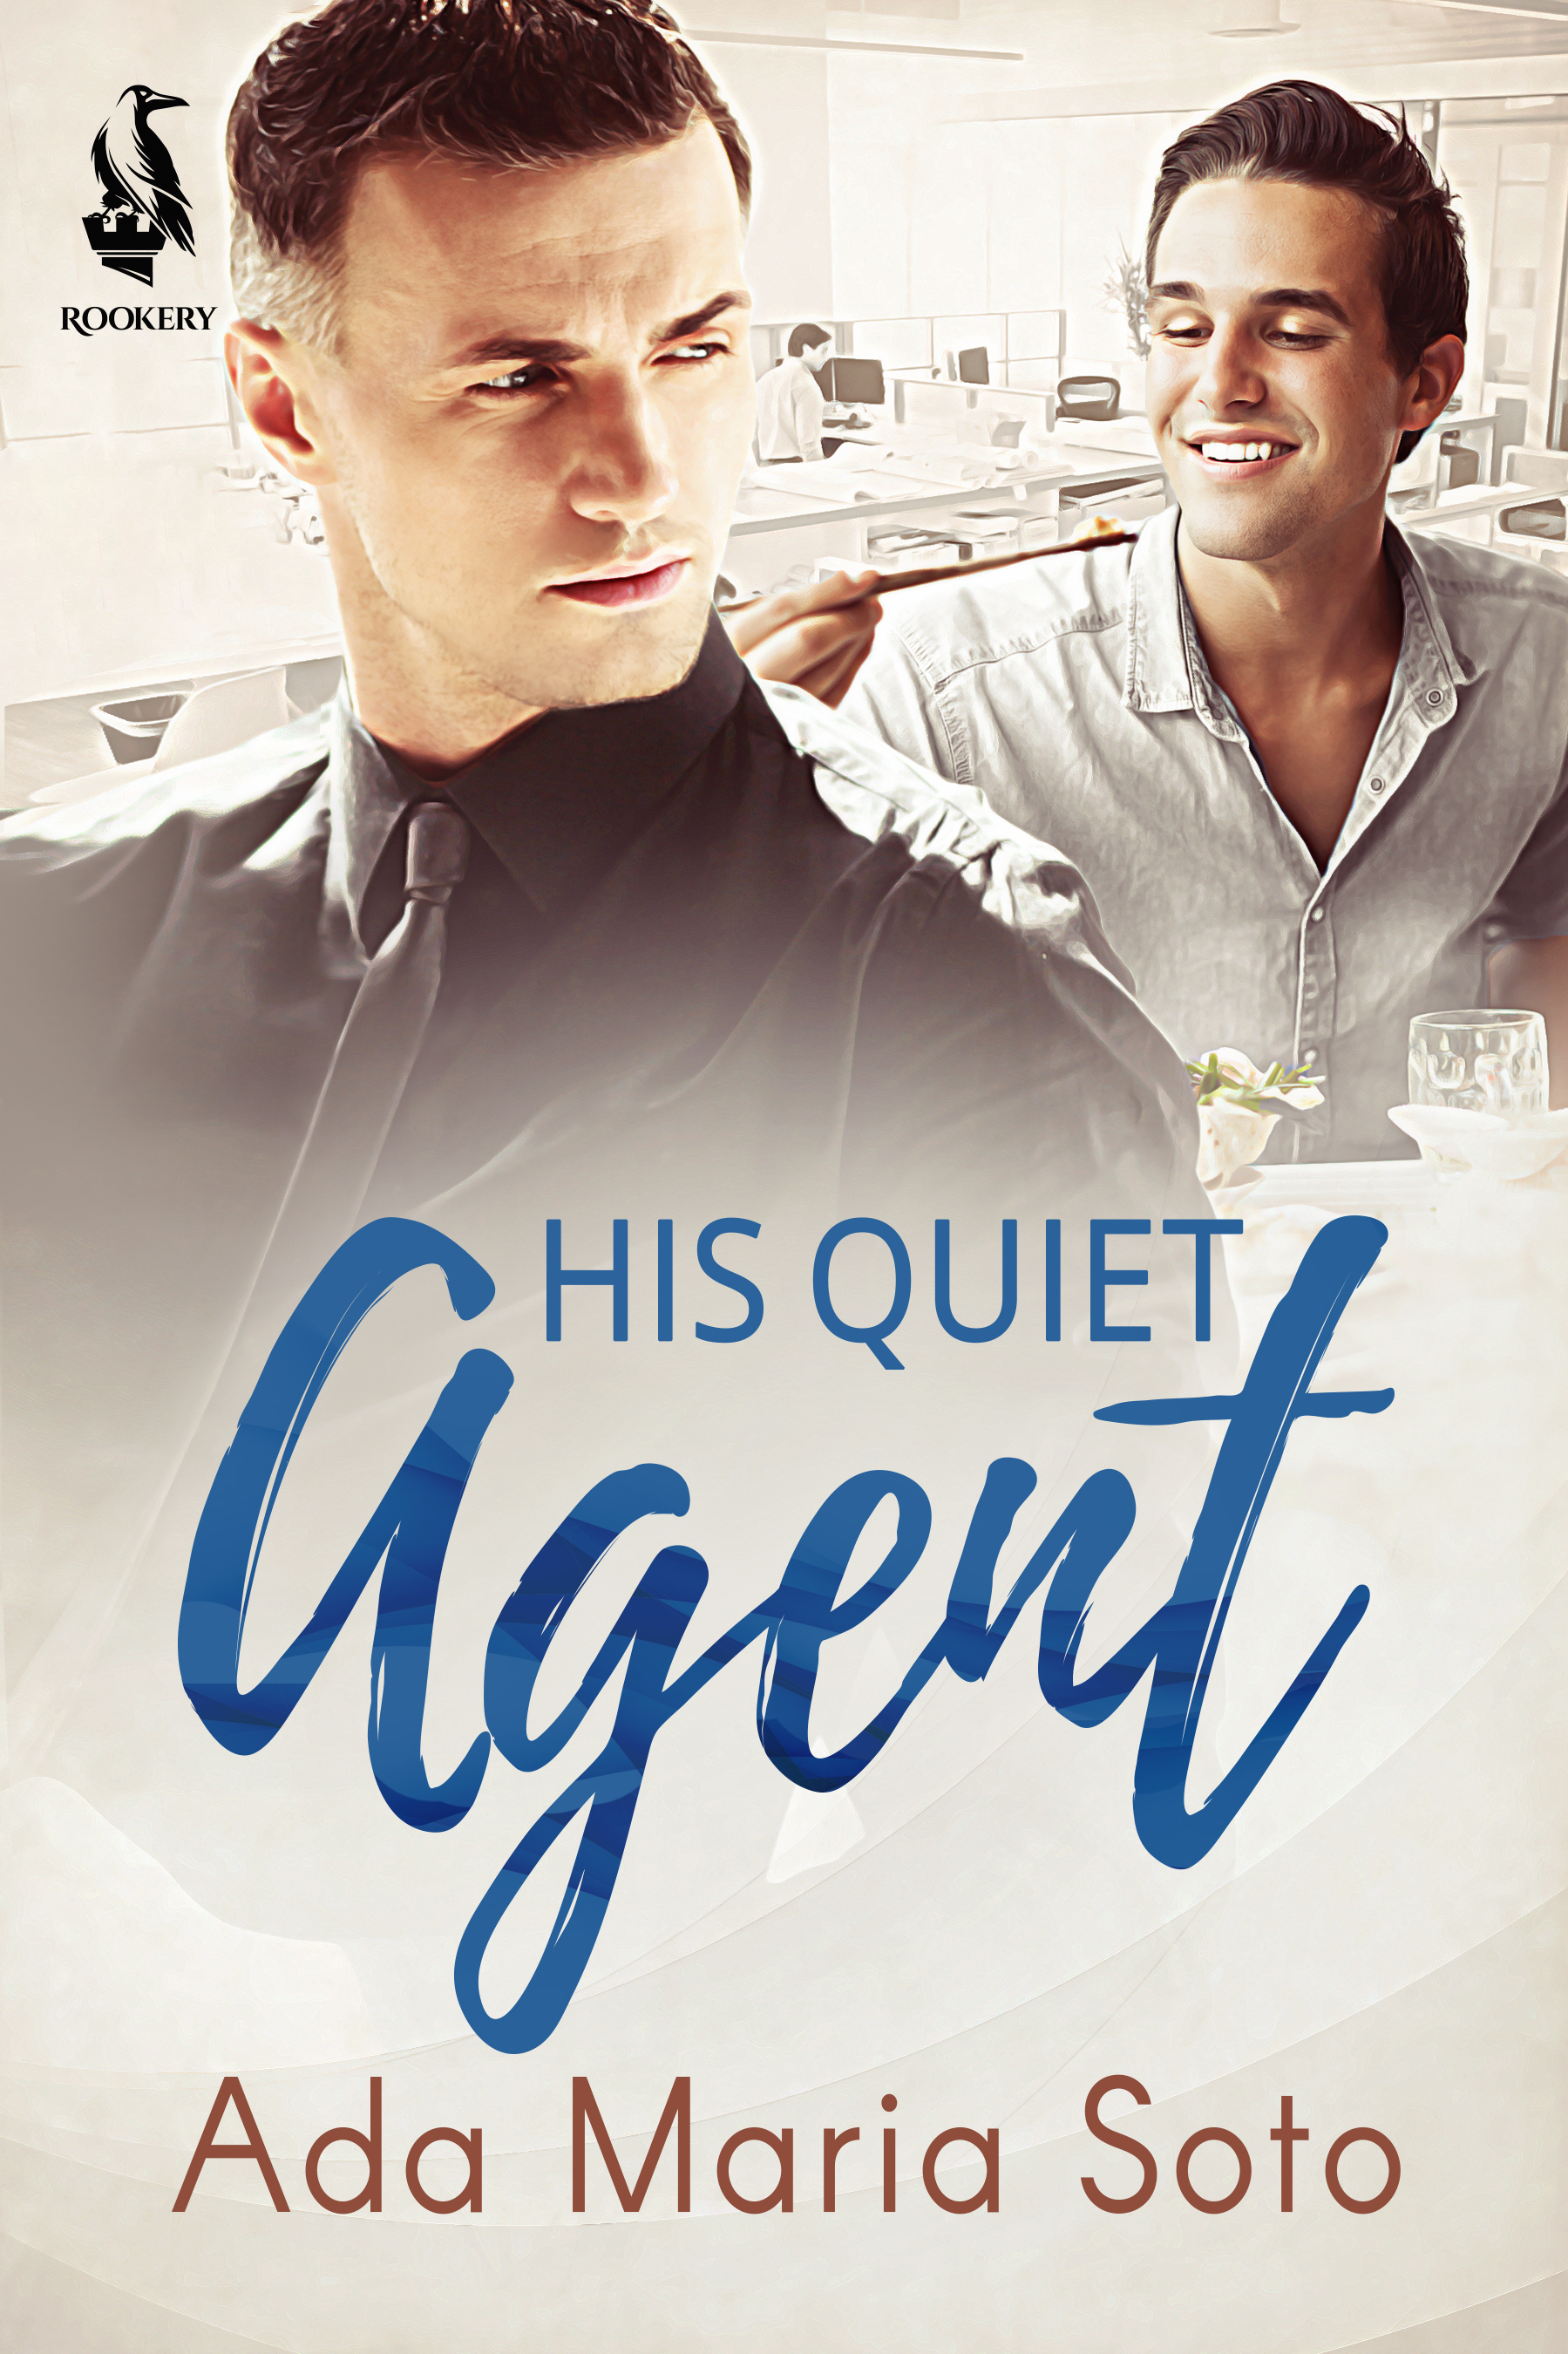 His Quiet Agent